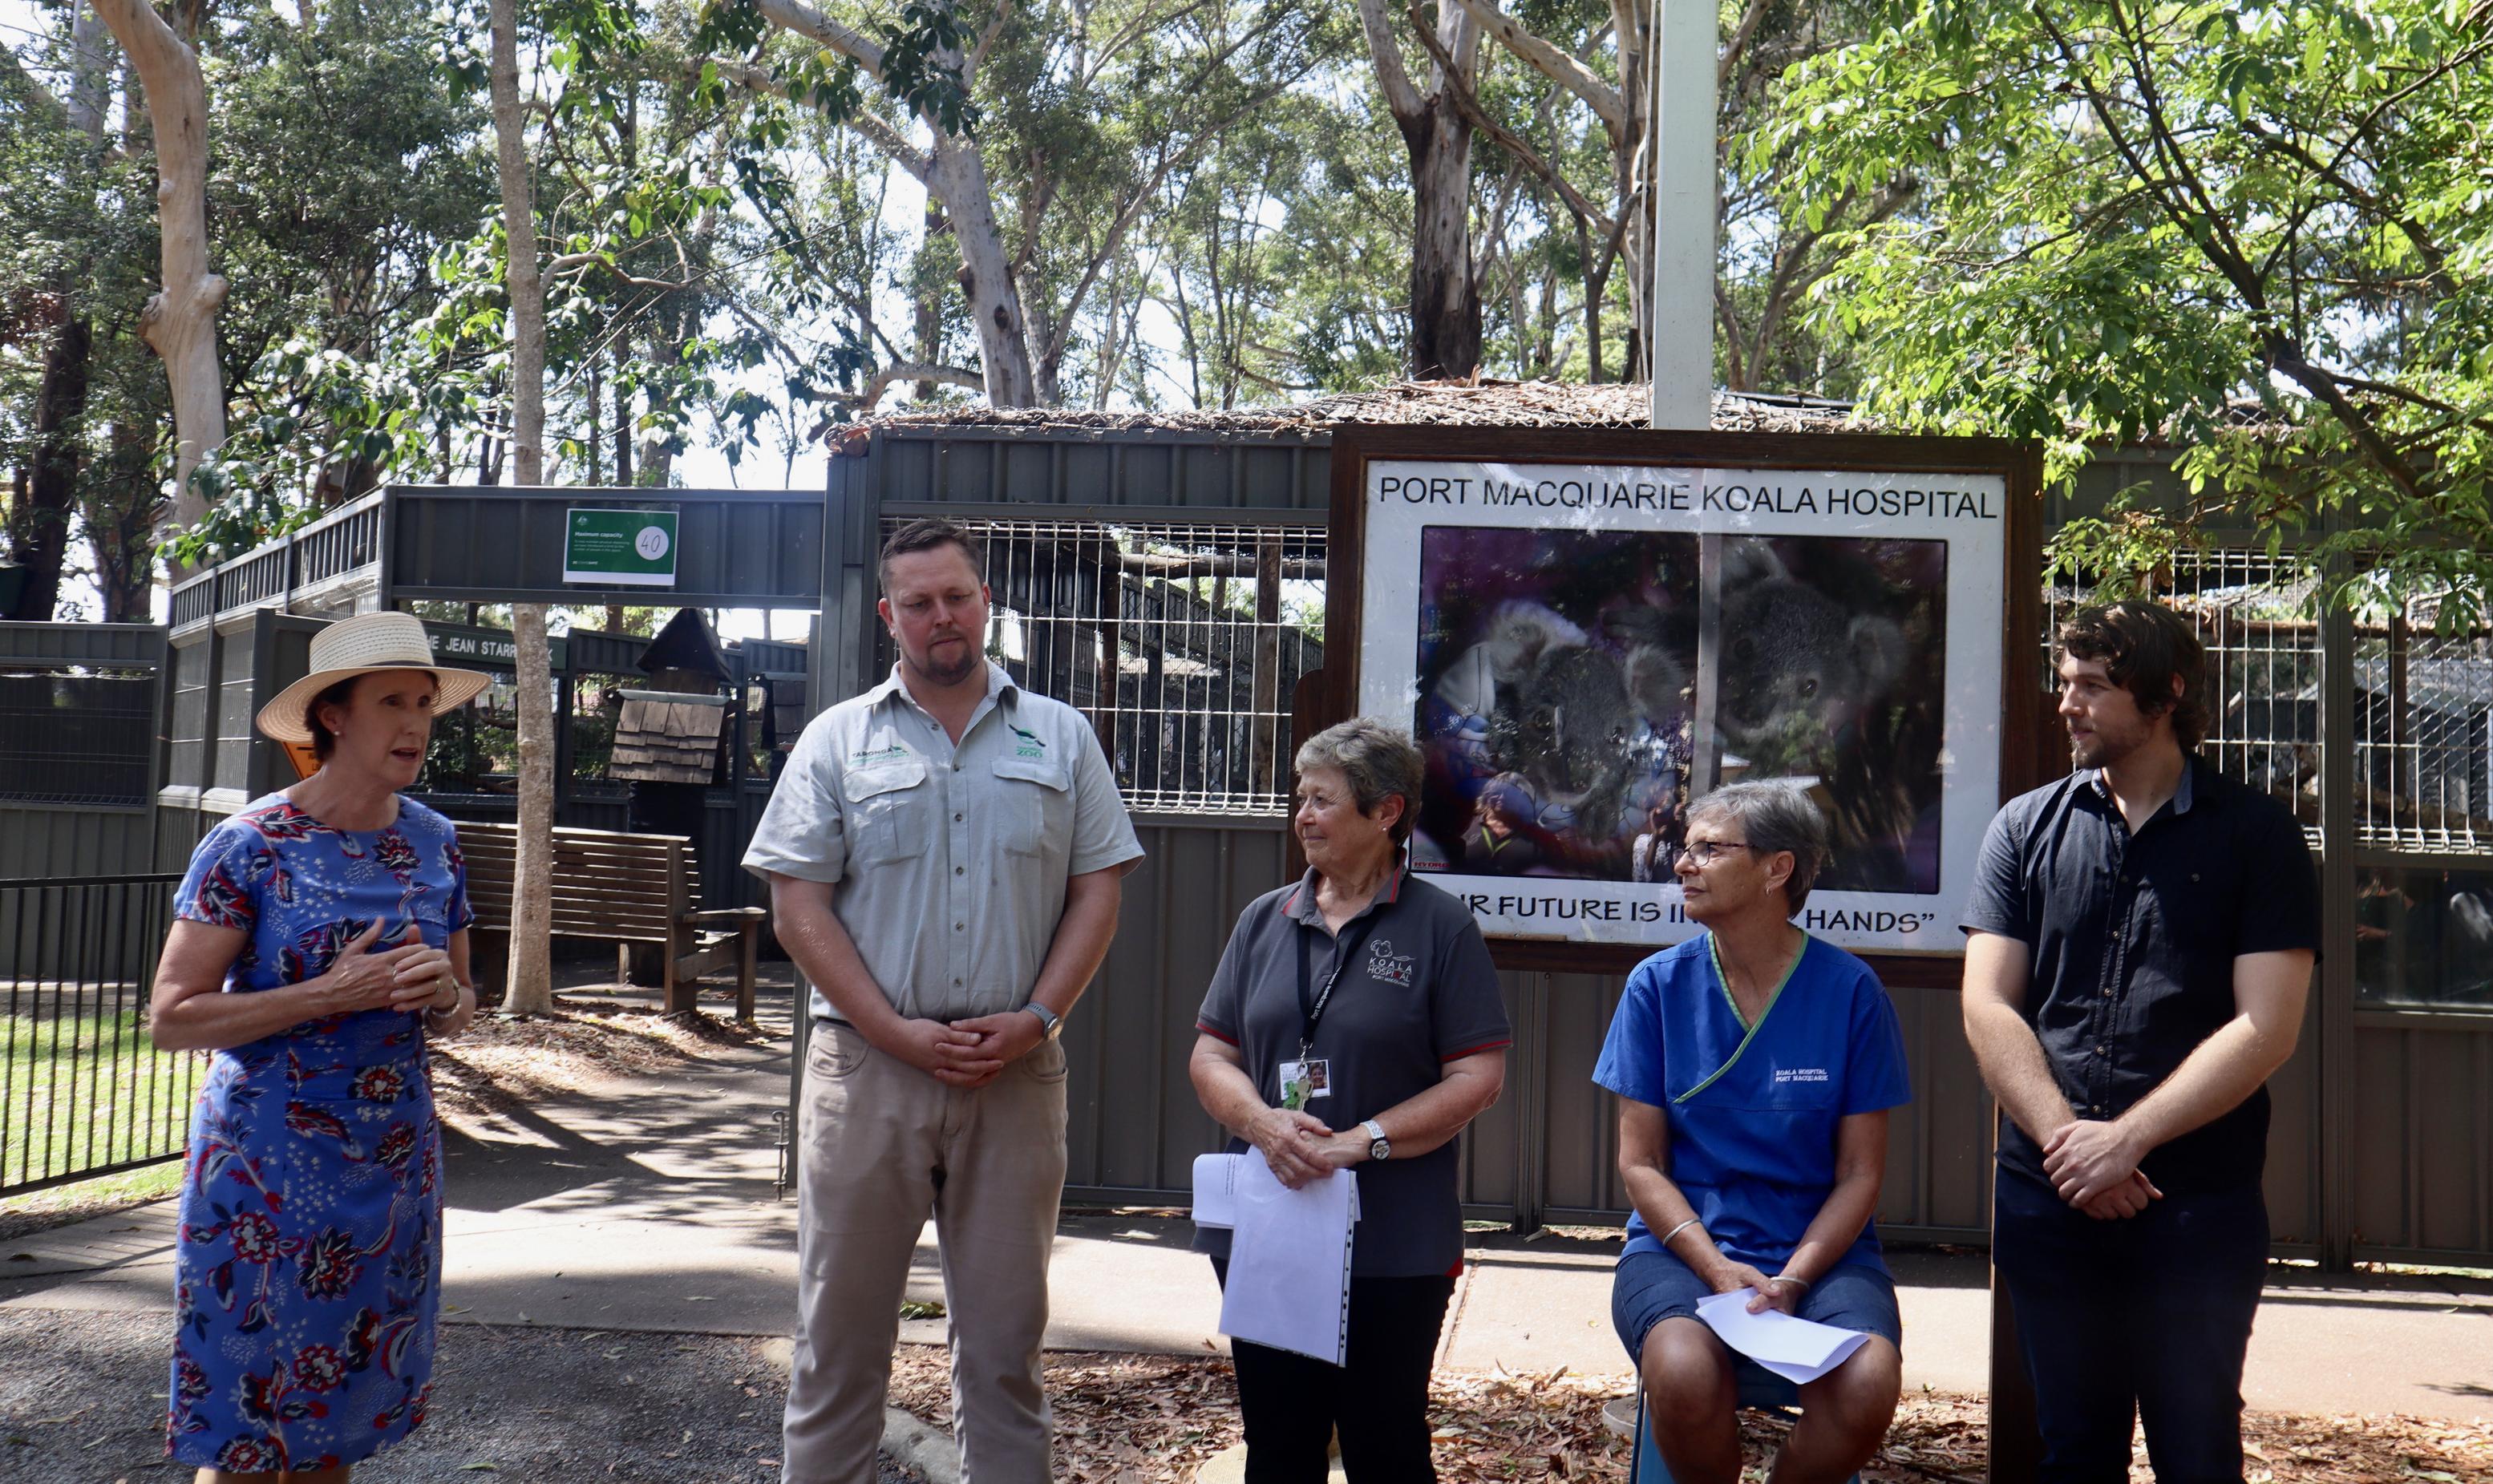 Unter dne Eurkalyptusbäumen des Koalahospitals in Port Macquarie stehen die Abgeordnete Leslie Williams, Artenschützer Nick Boyle, Präsidentin Sue Ashton, Koala-Expertin Cheyne Flanagan und Genetik Matt Lott bei einer Feier zur Eröffnung des Zuchtprogramms.